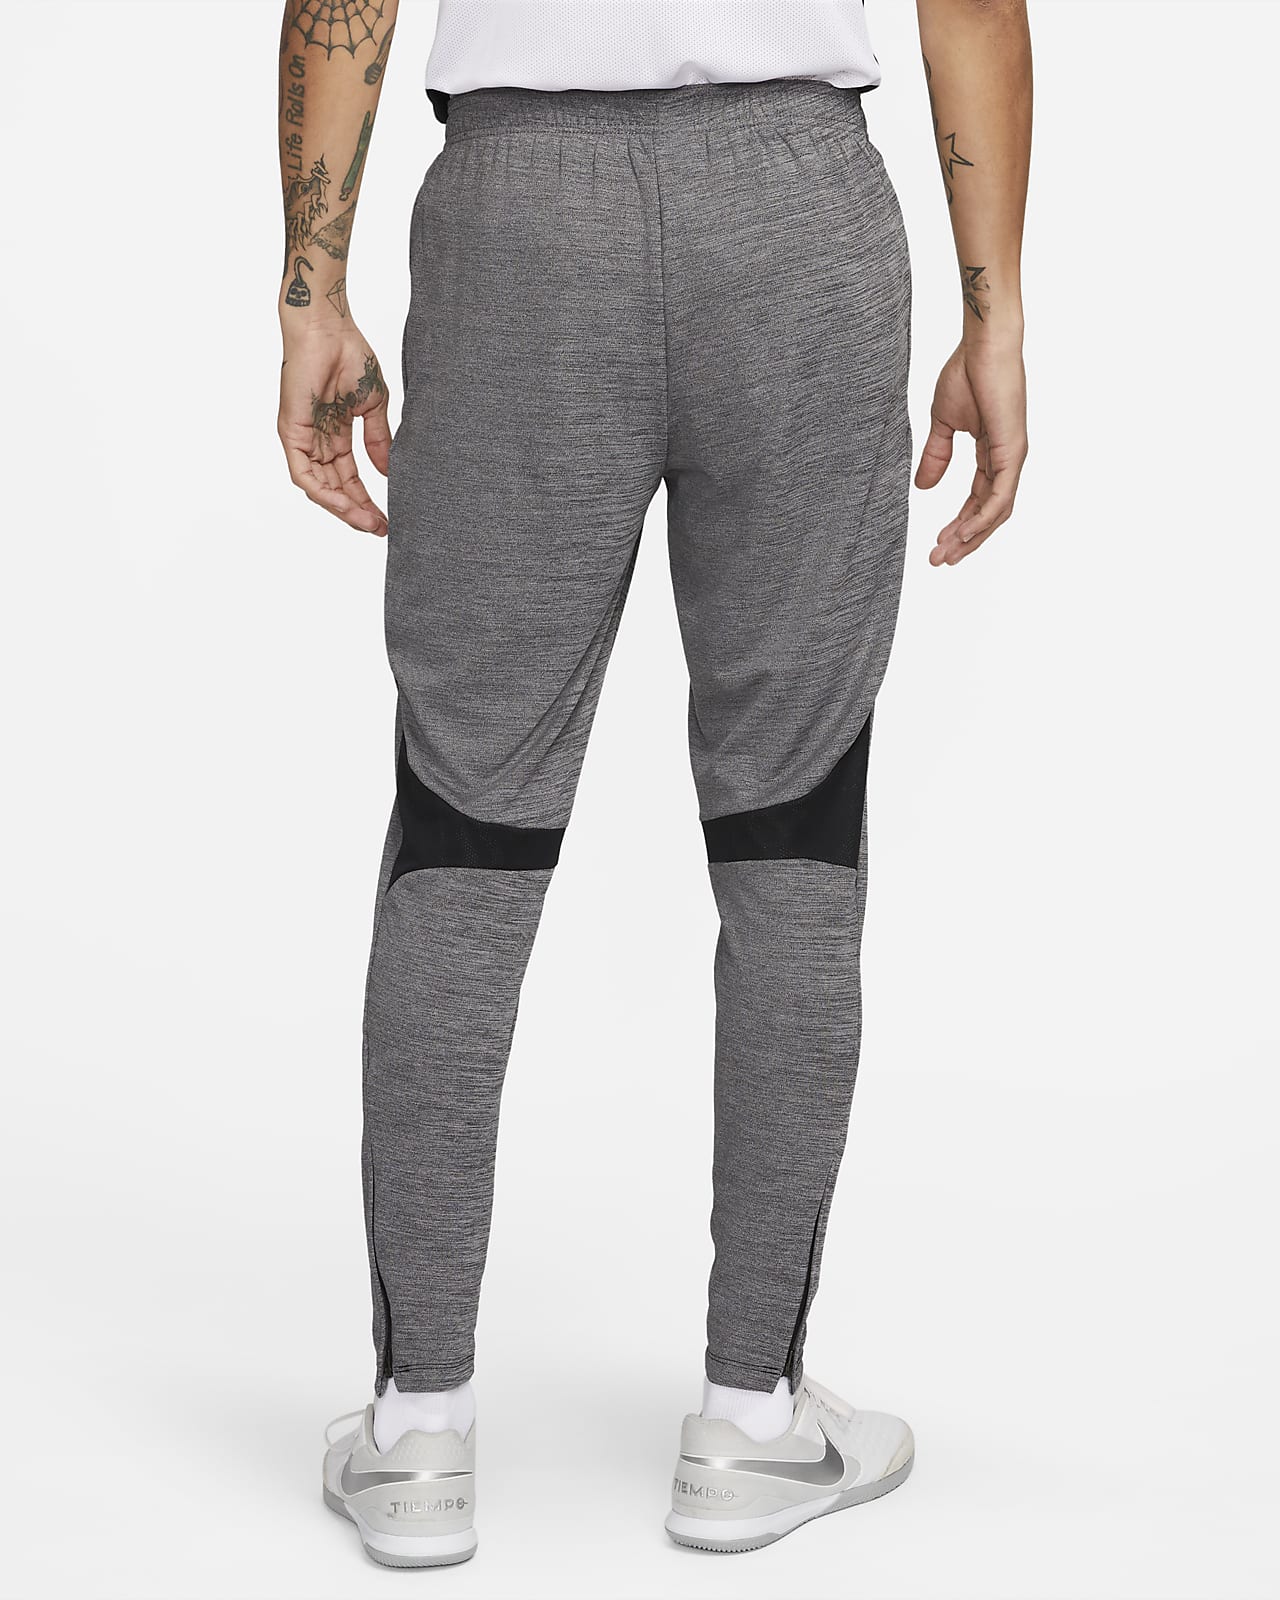 Nike Sportswear Tech Fleece Men's Open-Hem Tracksuit Bottoms. Nike AU